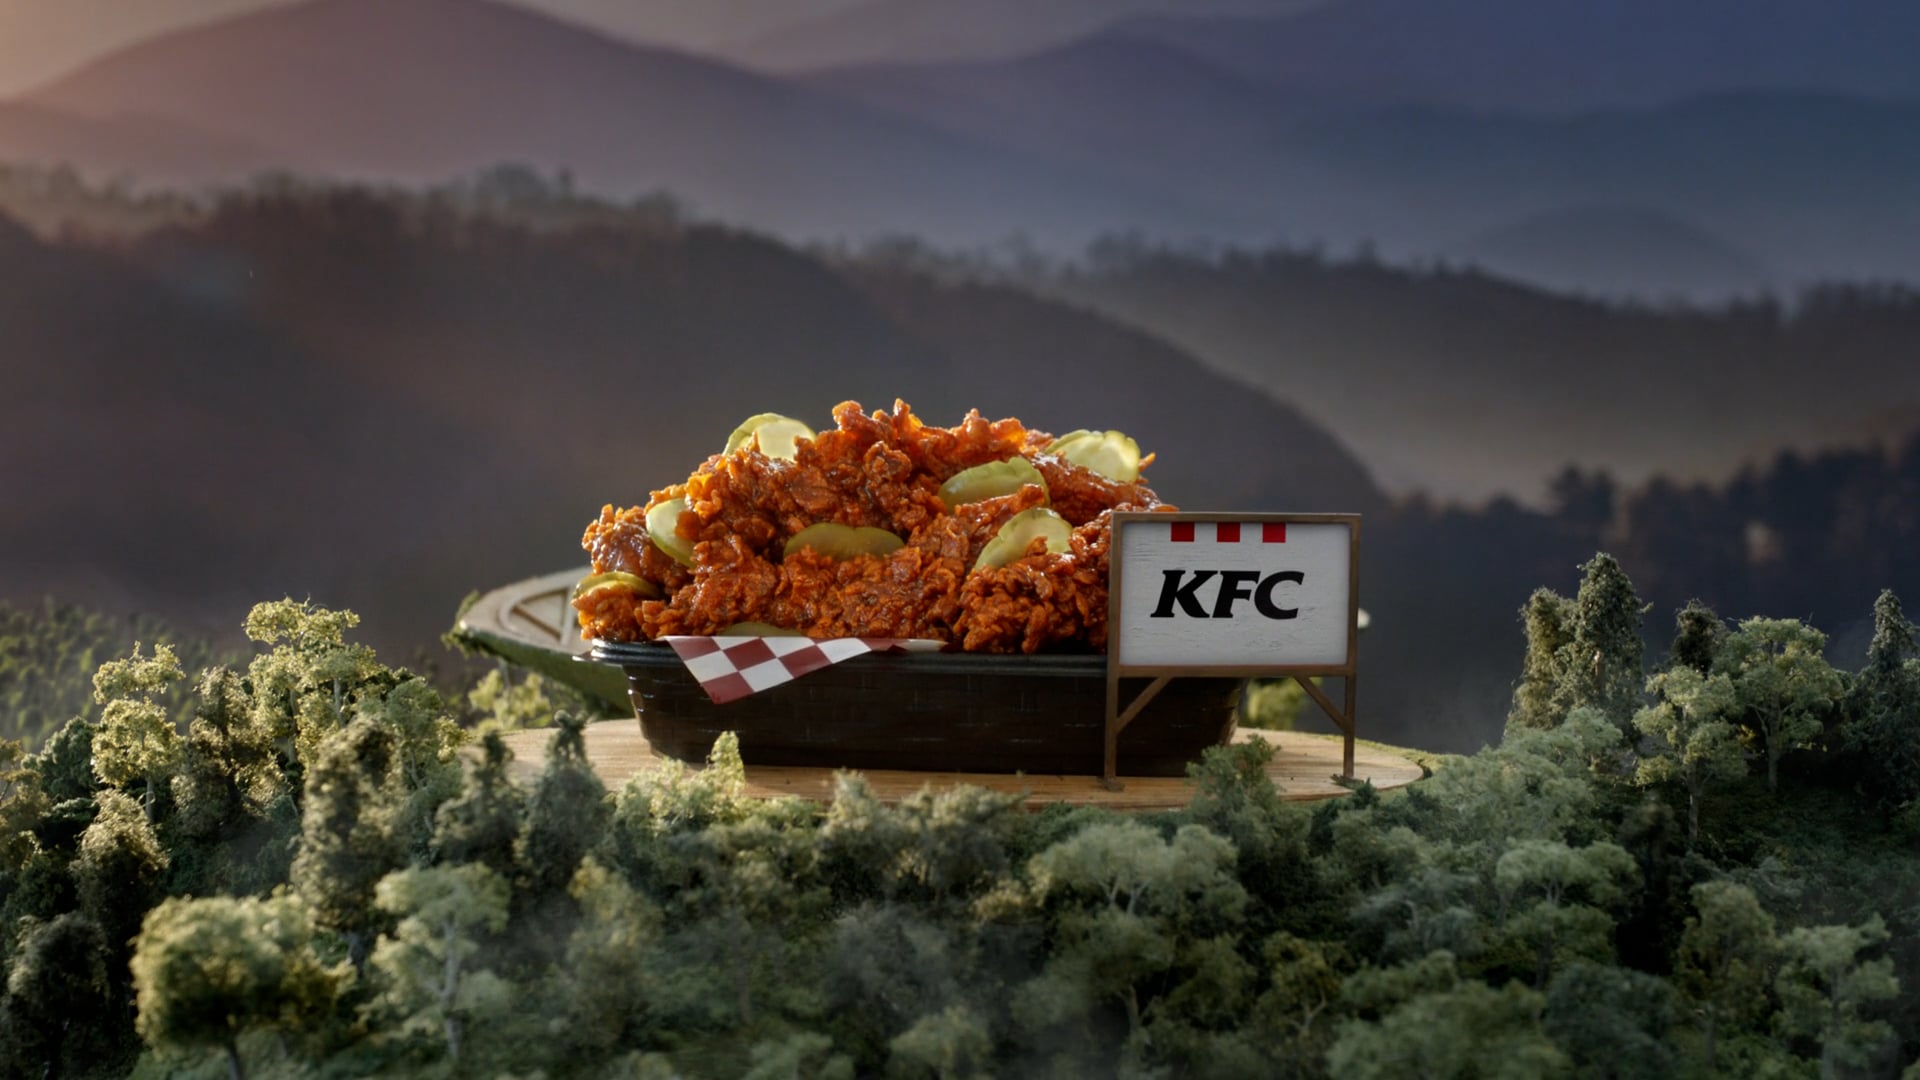 KFC "Smoky Mountain BBQ"